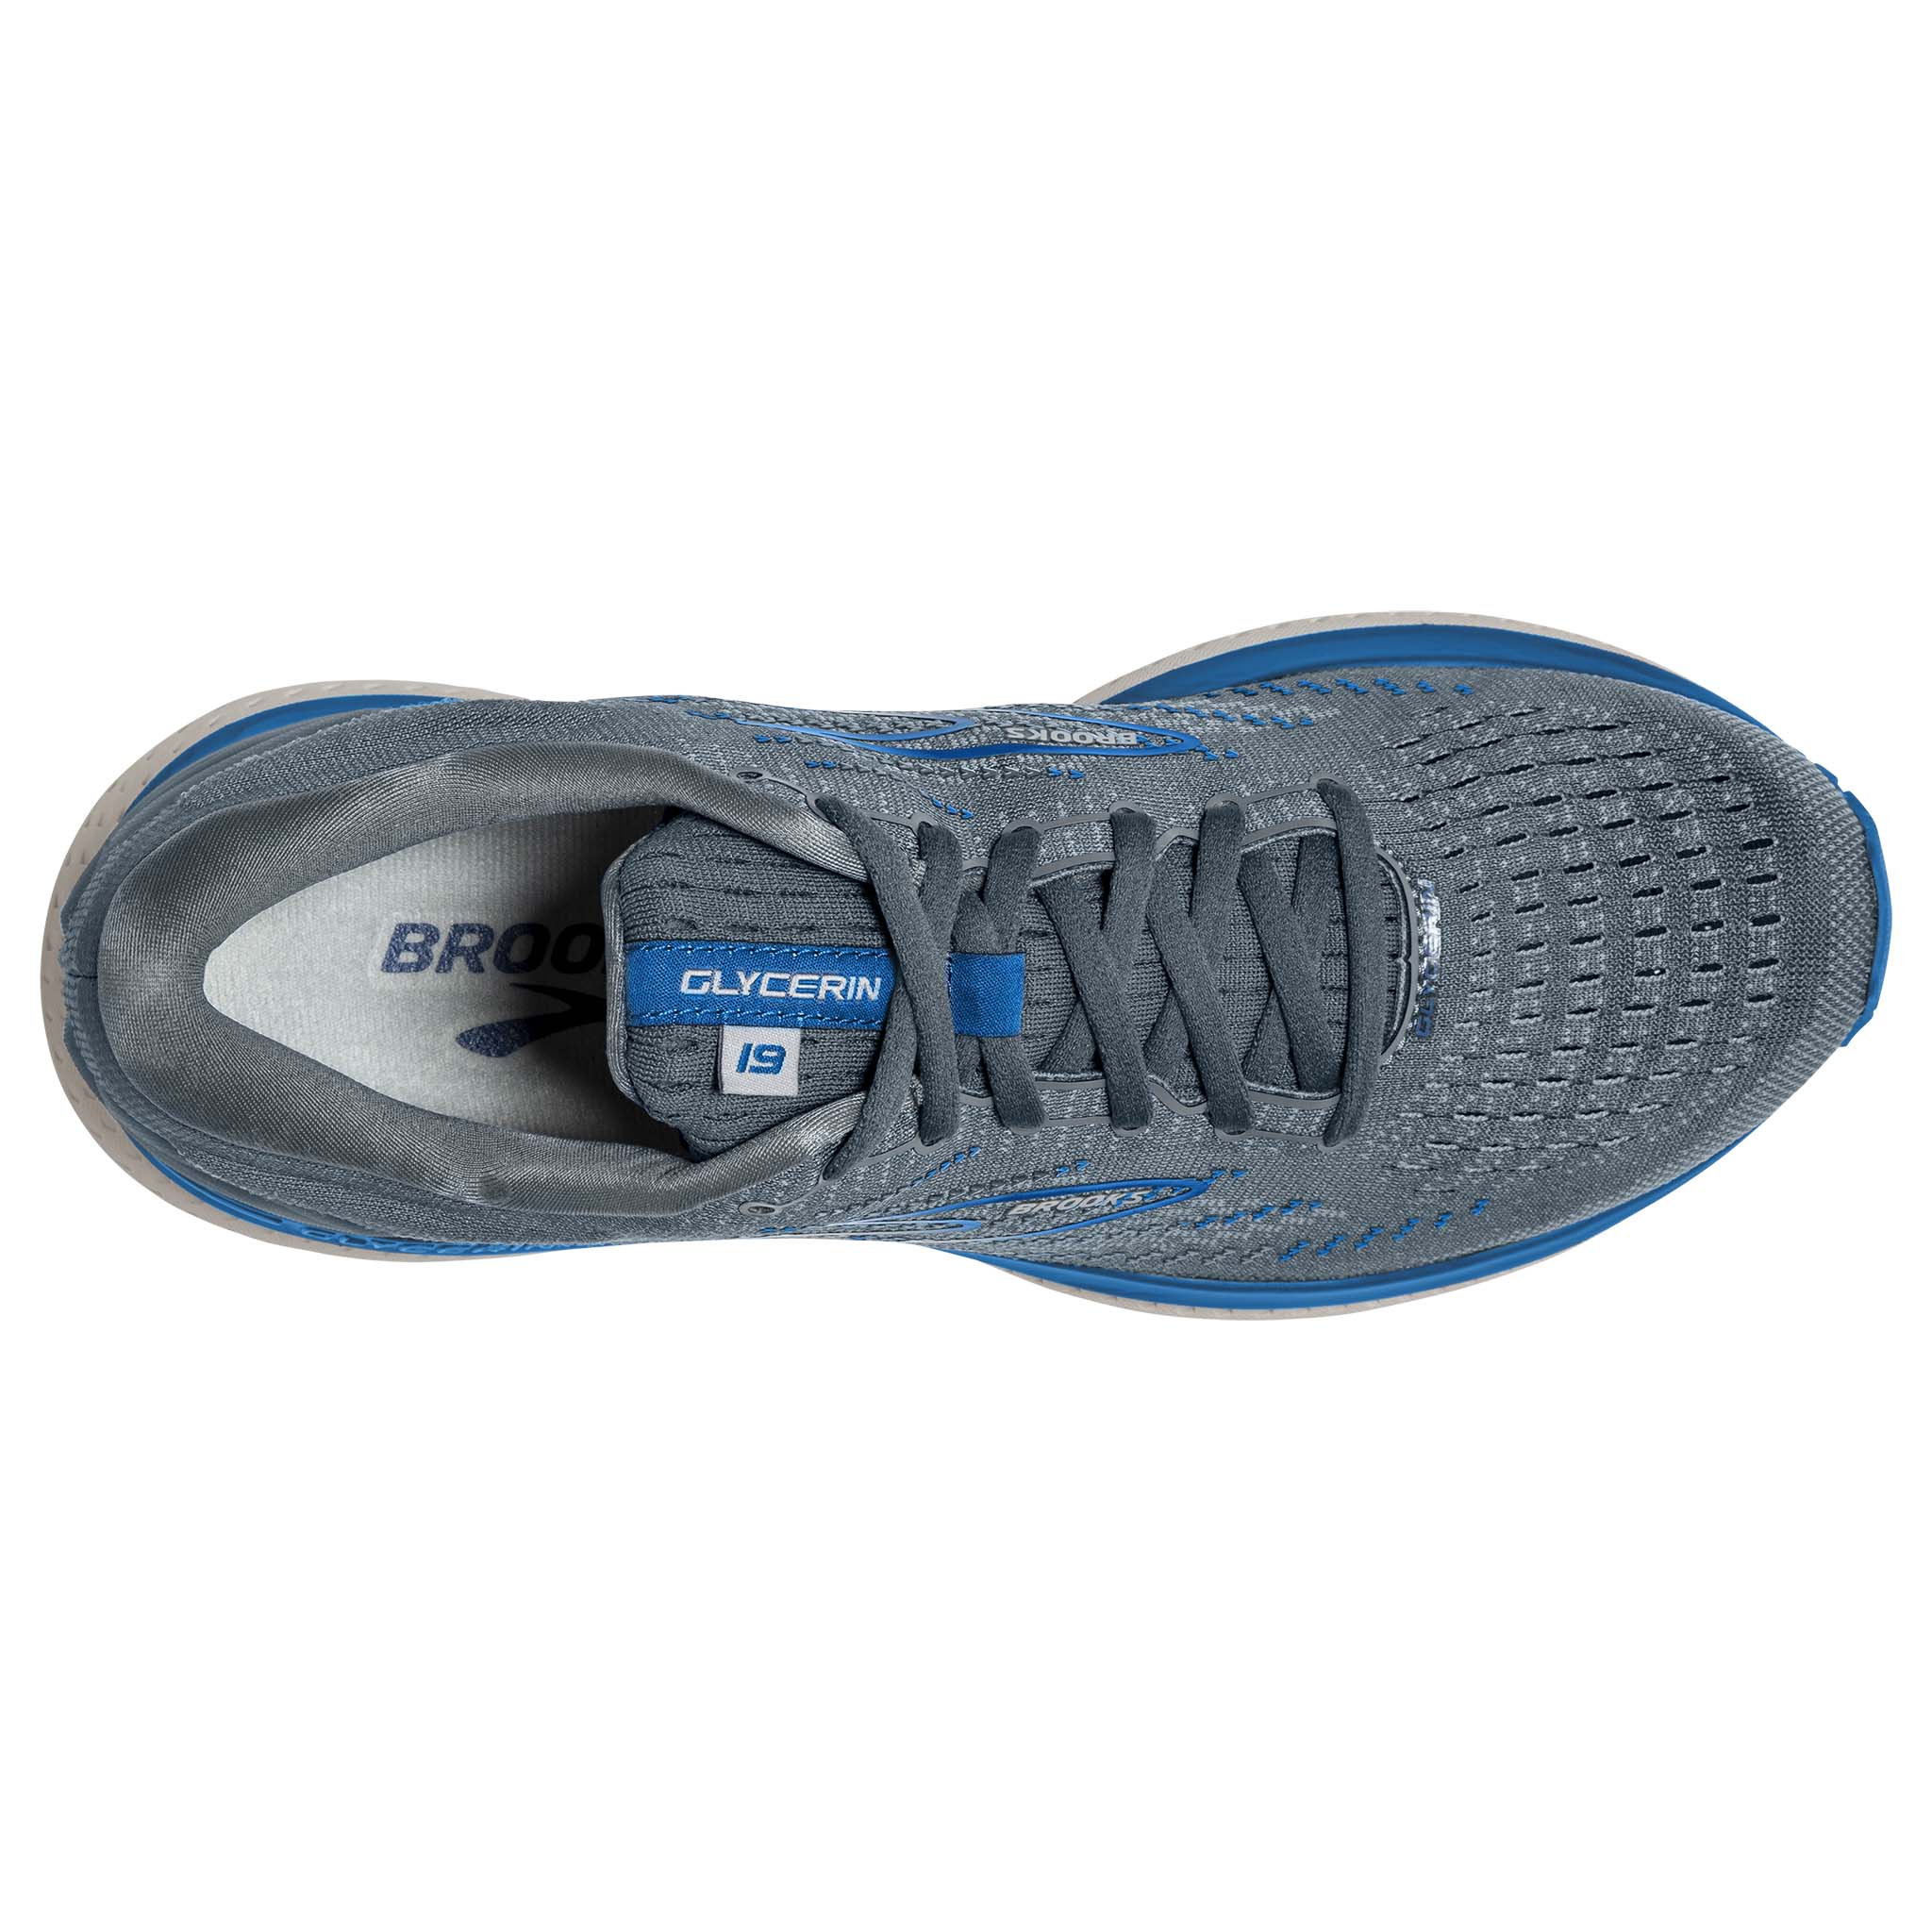 Brooks Men's Glycerin 19 Neutral Running Shoe - Navy/Blue/Nightlife - 8